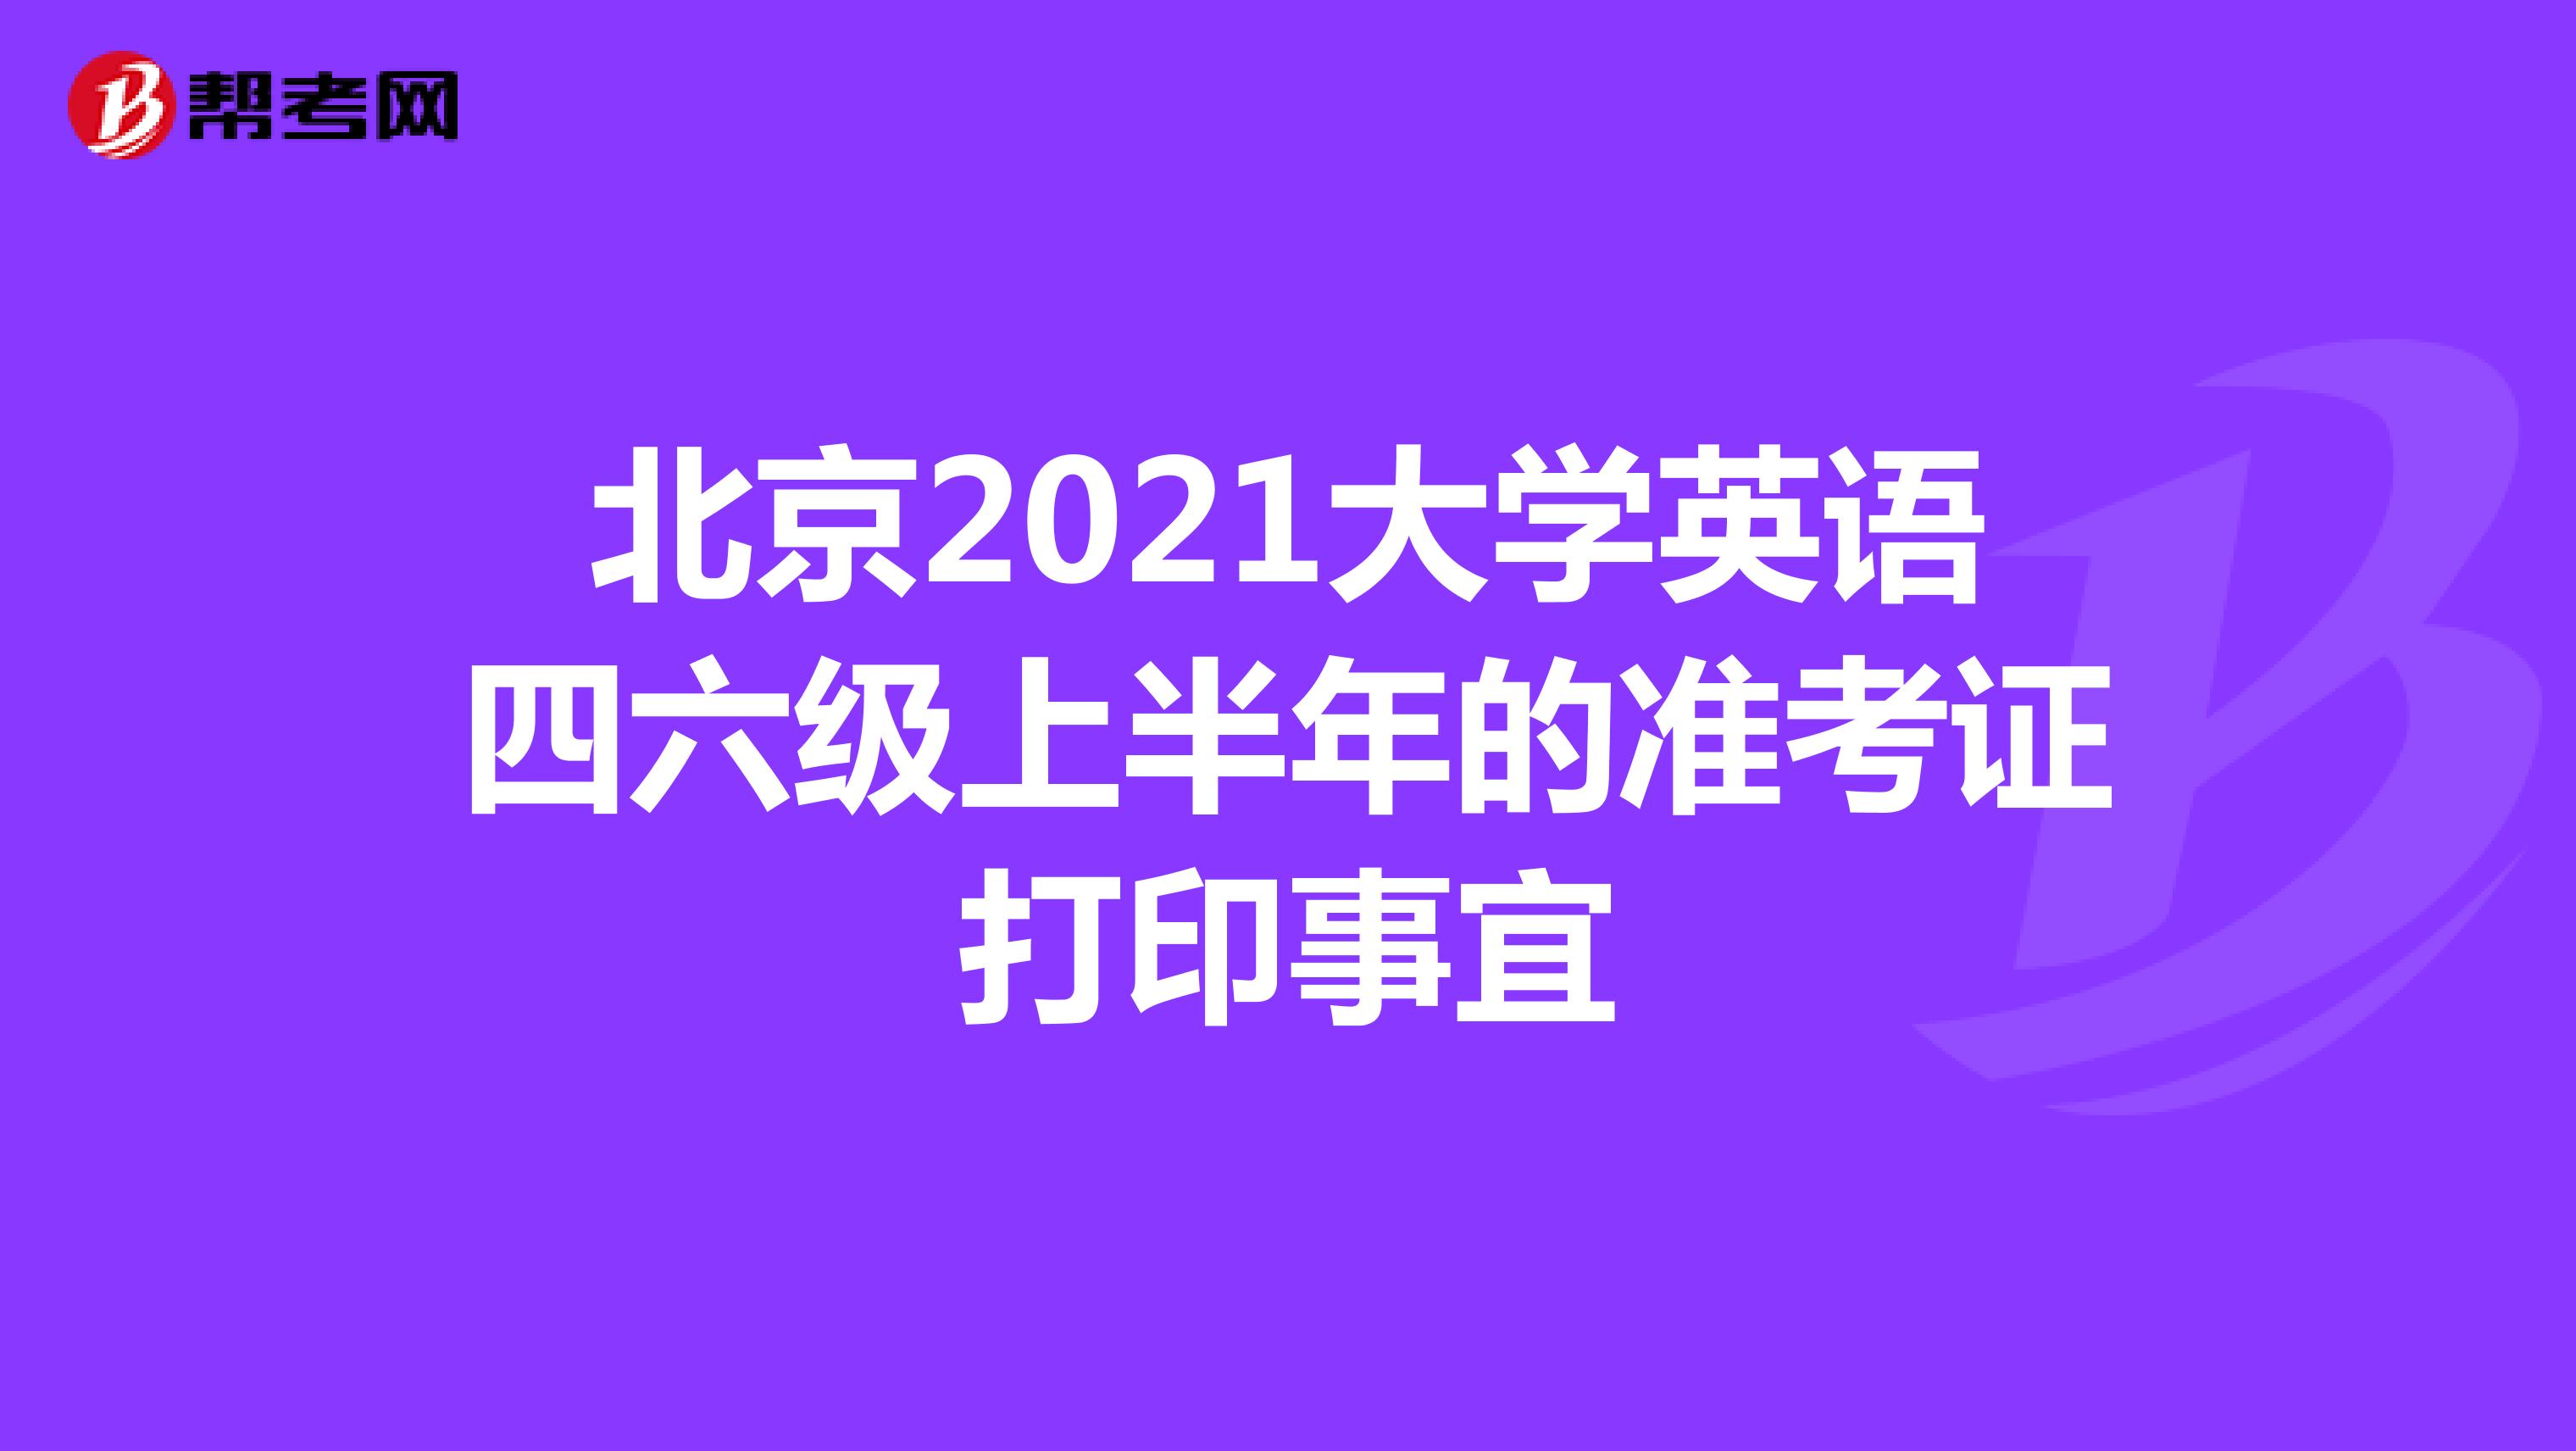 北京2021大学英语四六级上半年的准考证打印事宜